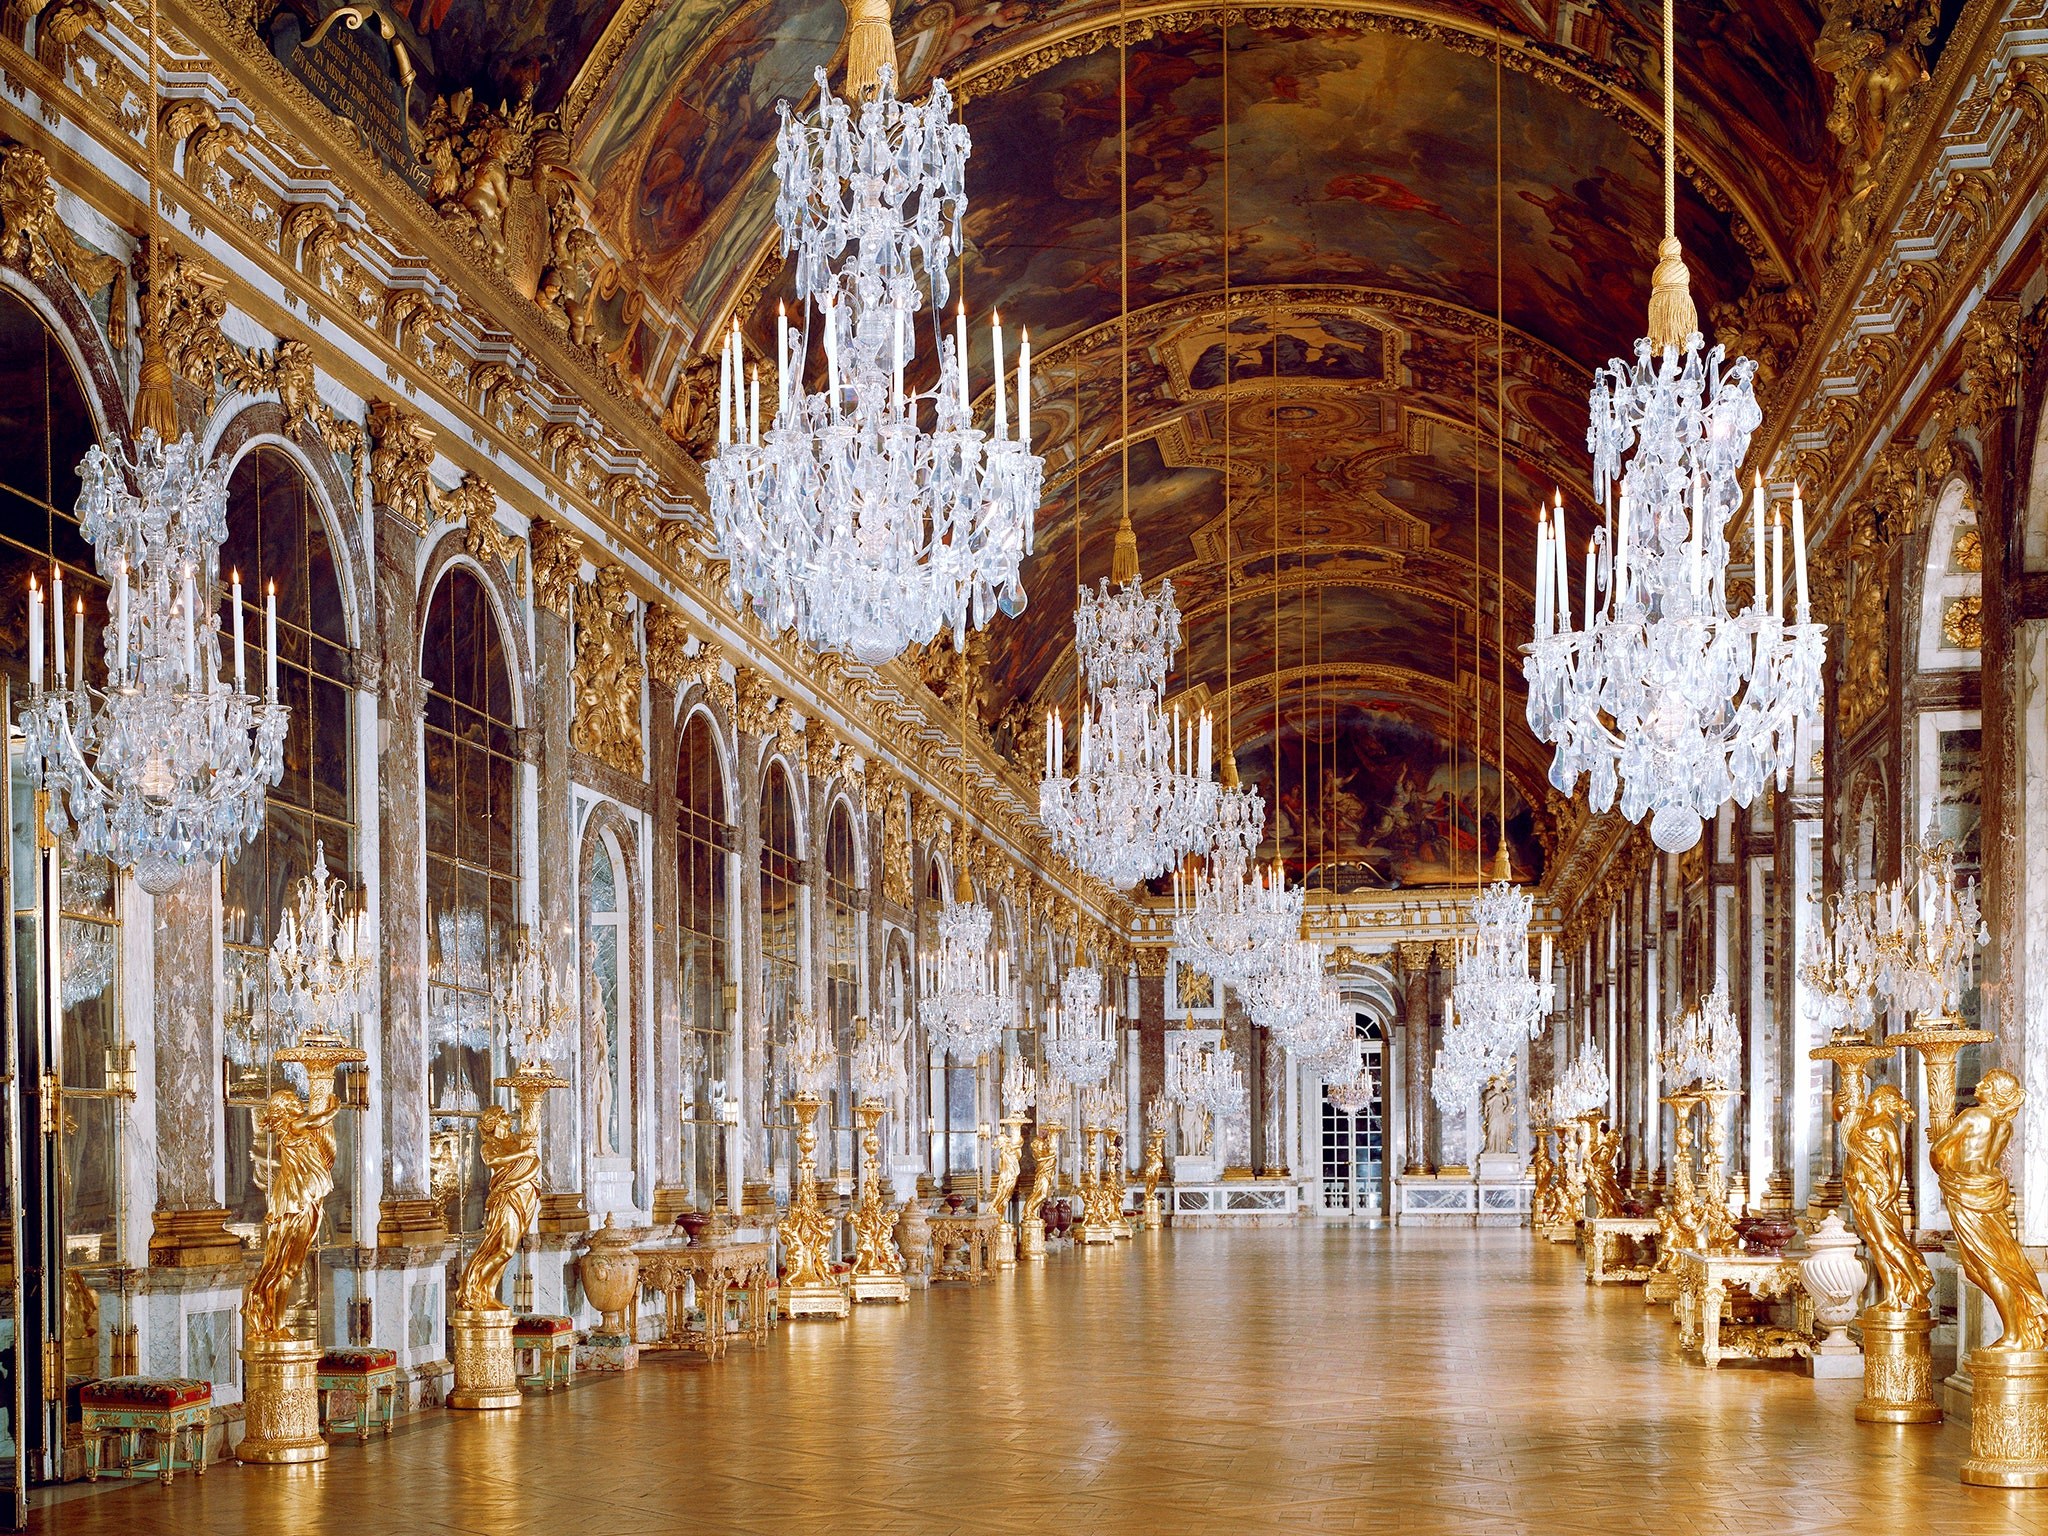 Галереи версаля. Зеркальная галерея Версальского дворца. Версаль дворец французских королей. Версальский дворец внутри зеркальная галерея.